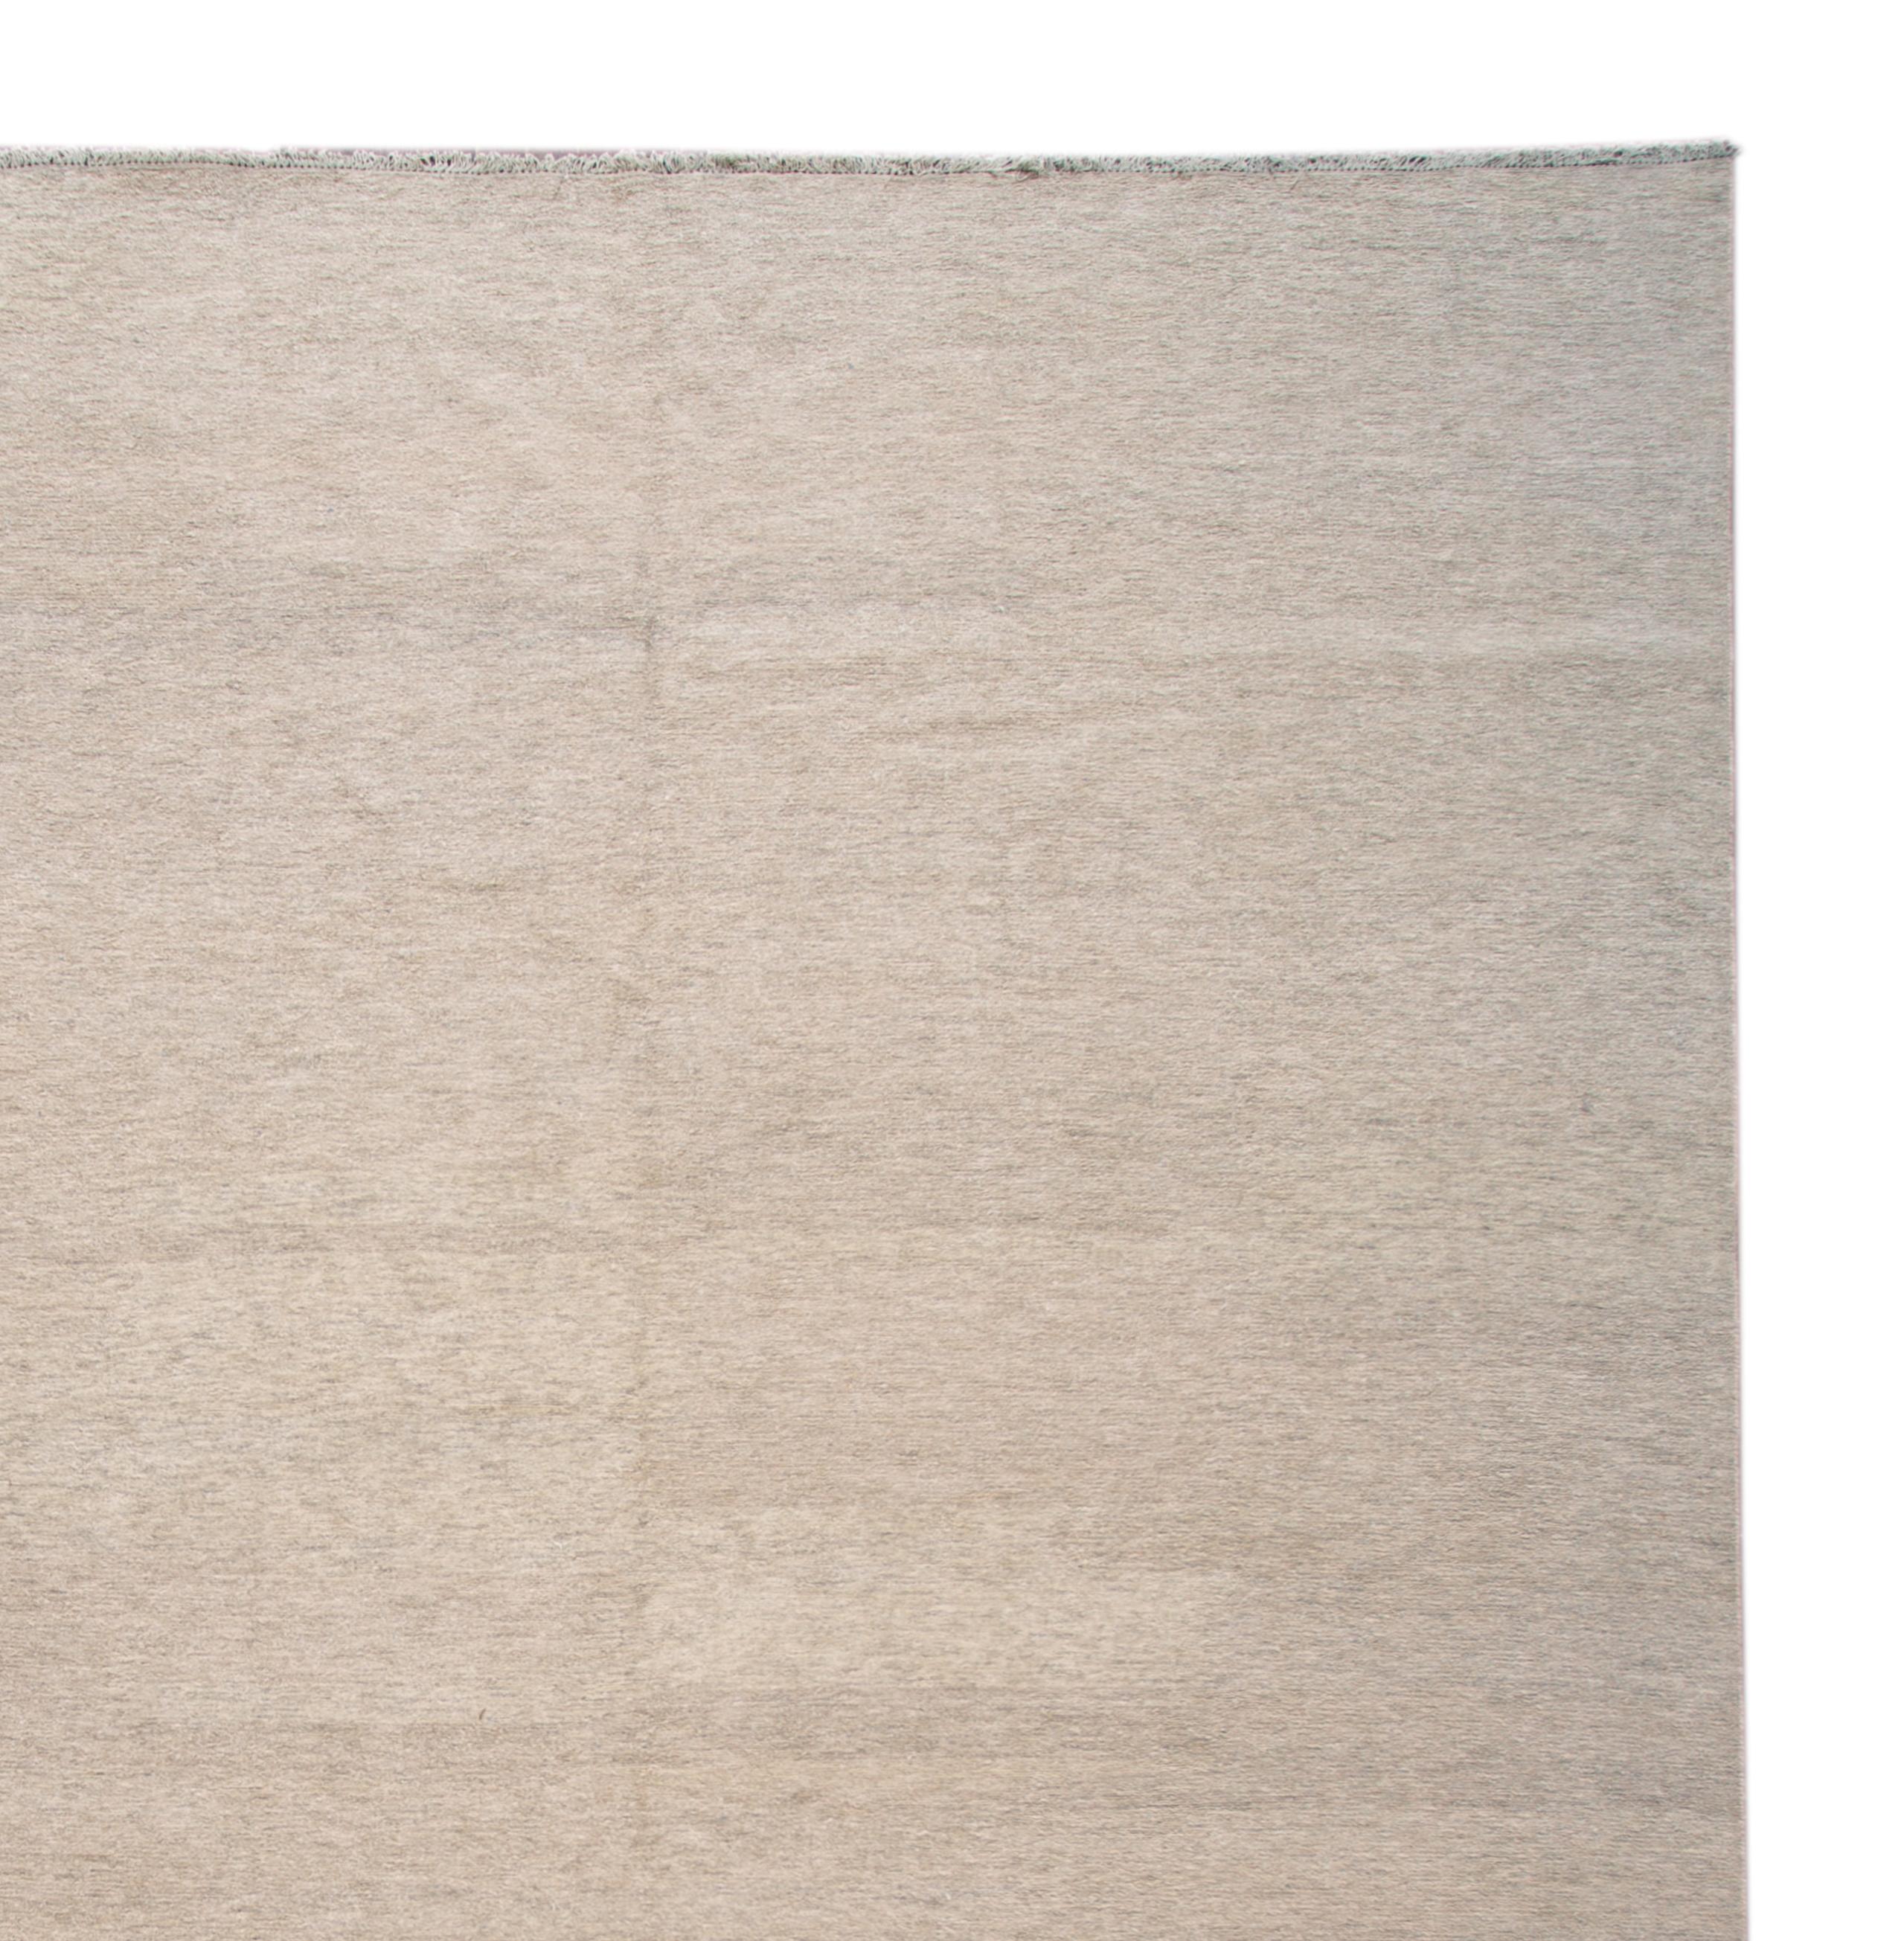 Magnifique tapis Soumak moderne avec un champ de couleur unie ivoire/beige. 

Ce tapis mesure 11' 10